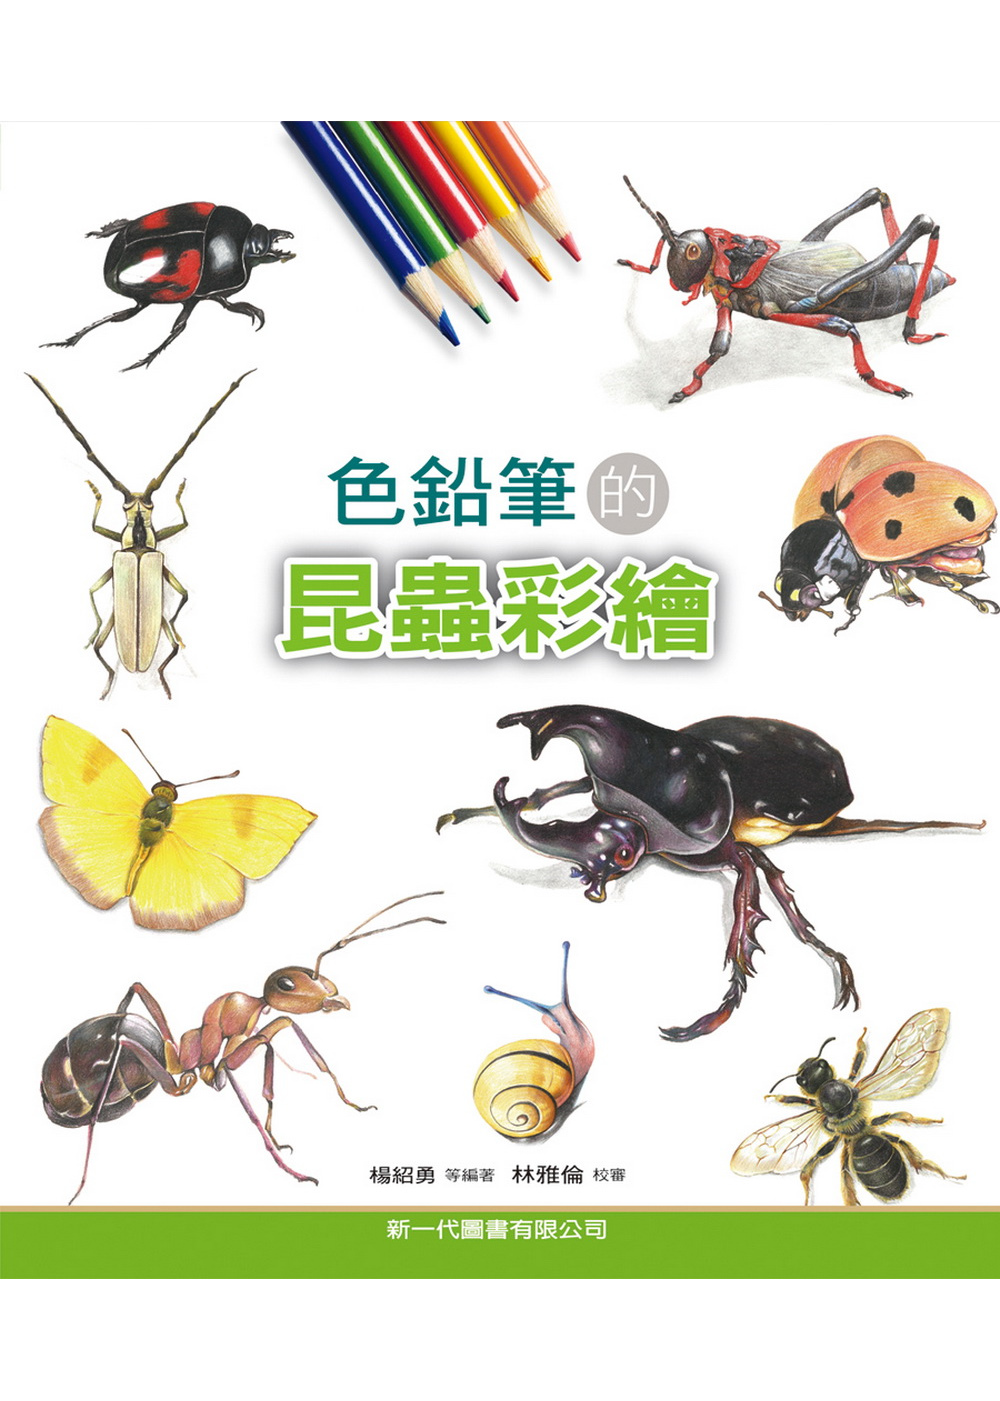 色鉛筆的昆蟲彩繪